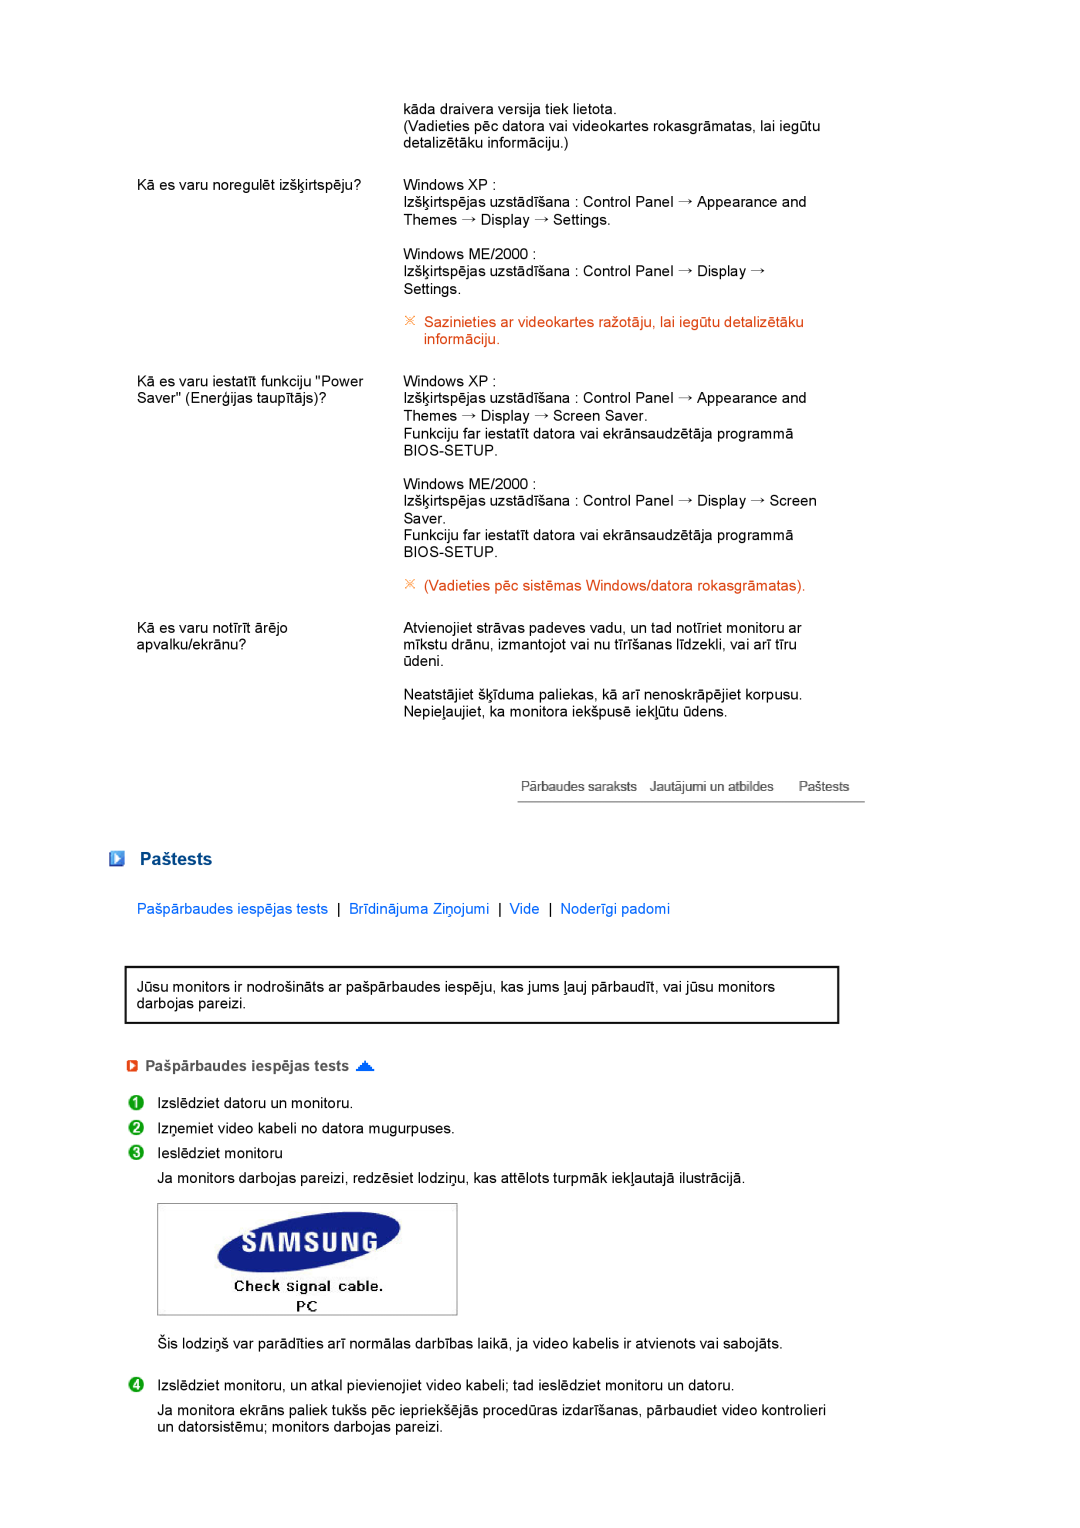 Samsung LS24HUCEBQ/EDC manual Paštests, Vadieties pēc sistēmas Windows/datora rokasgrāmatas, Pašpārbaudes iespējas tests 